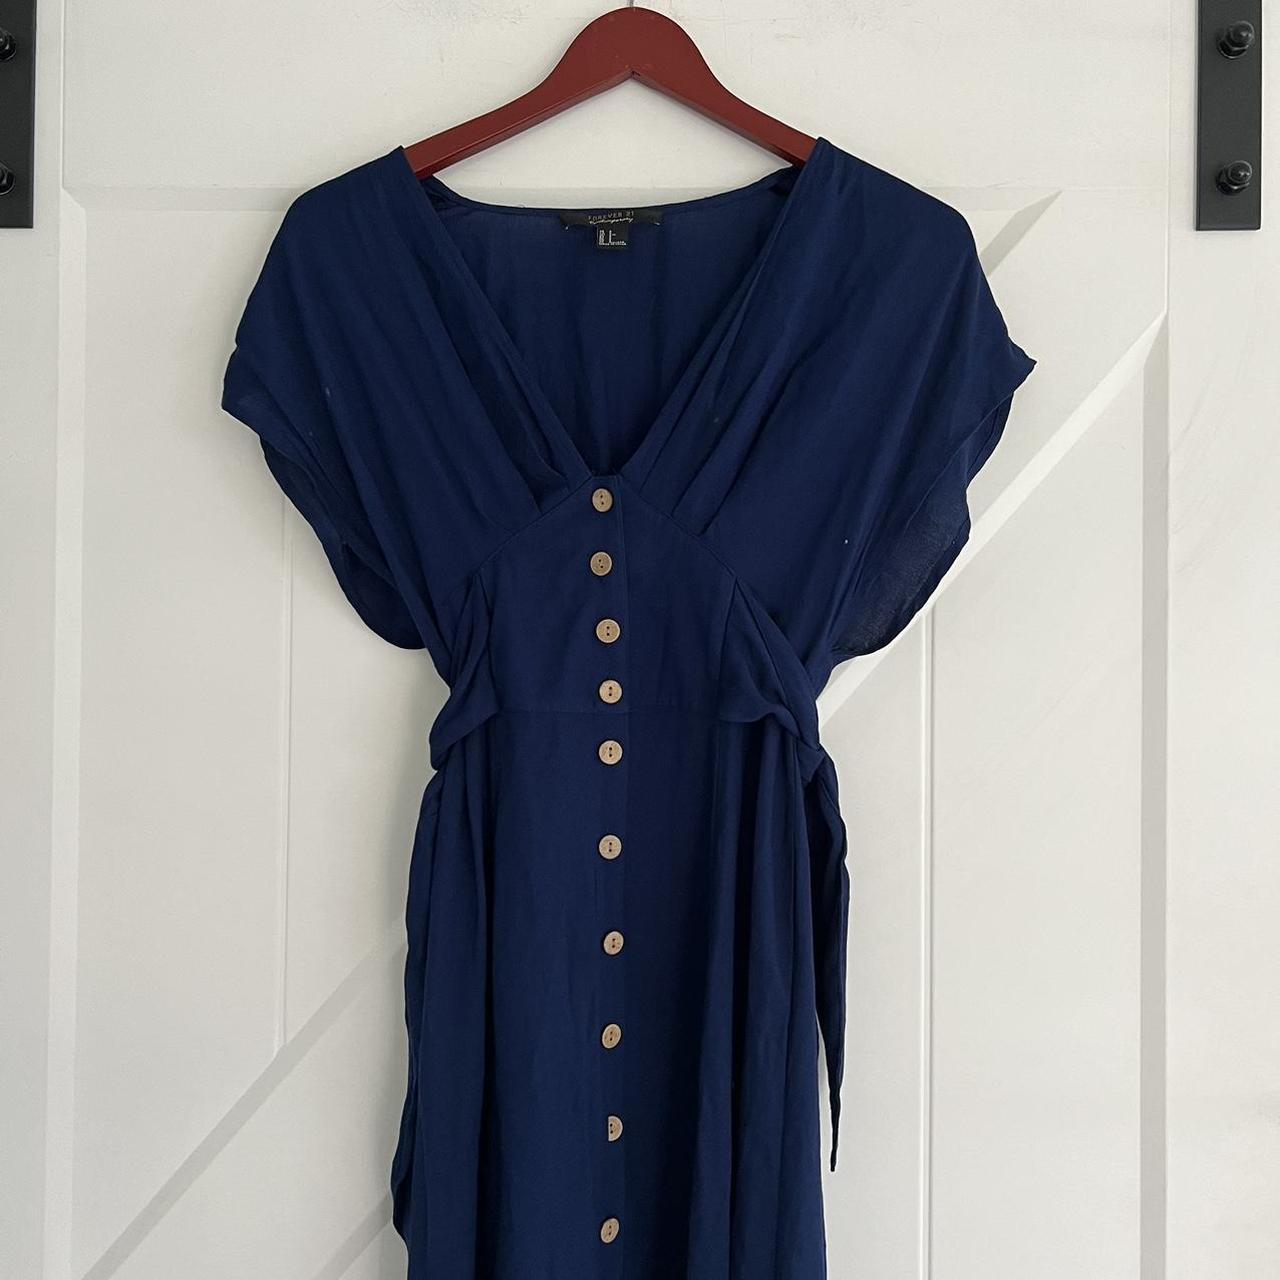 Vintage forever 21 midi dress Color: navy blue Size:... - Depop